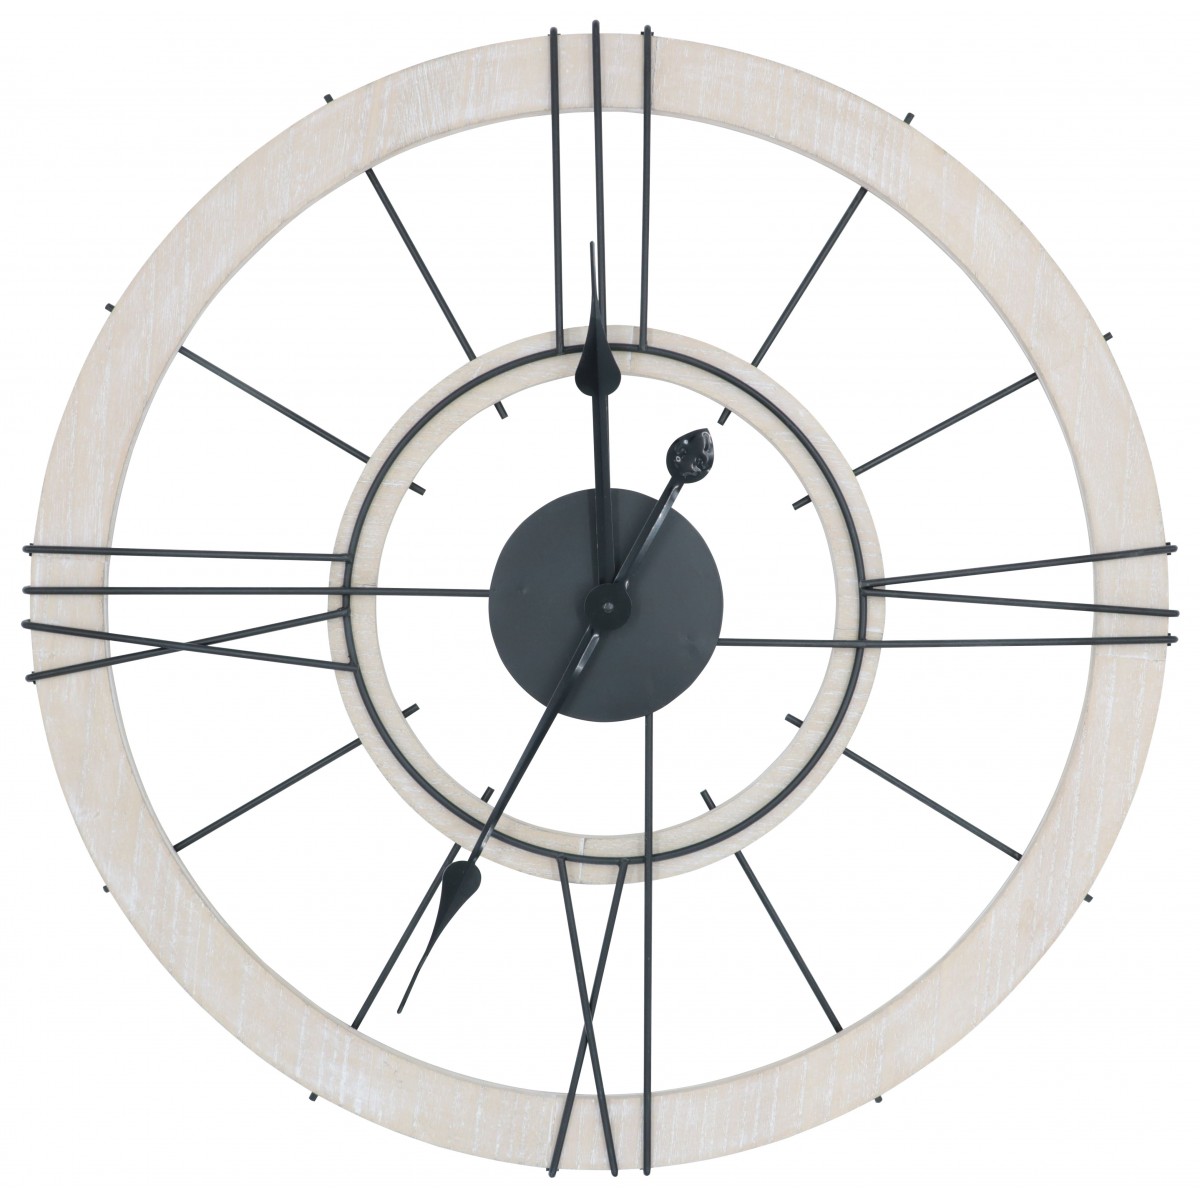 Horloge Denver 60 cm face